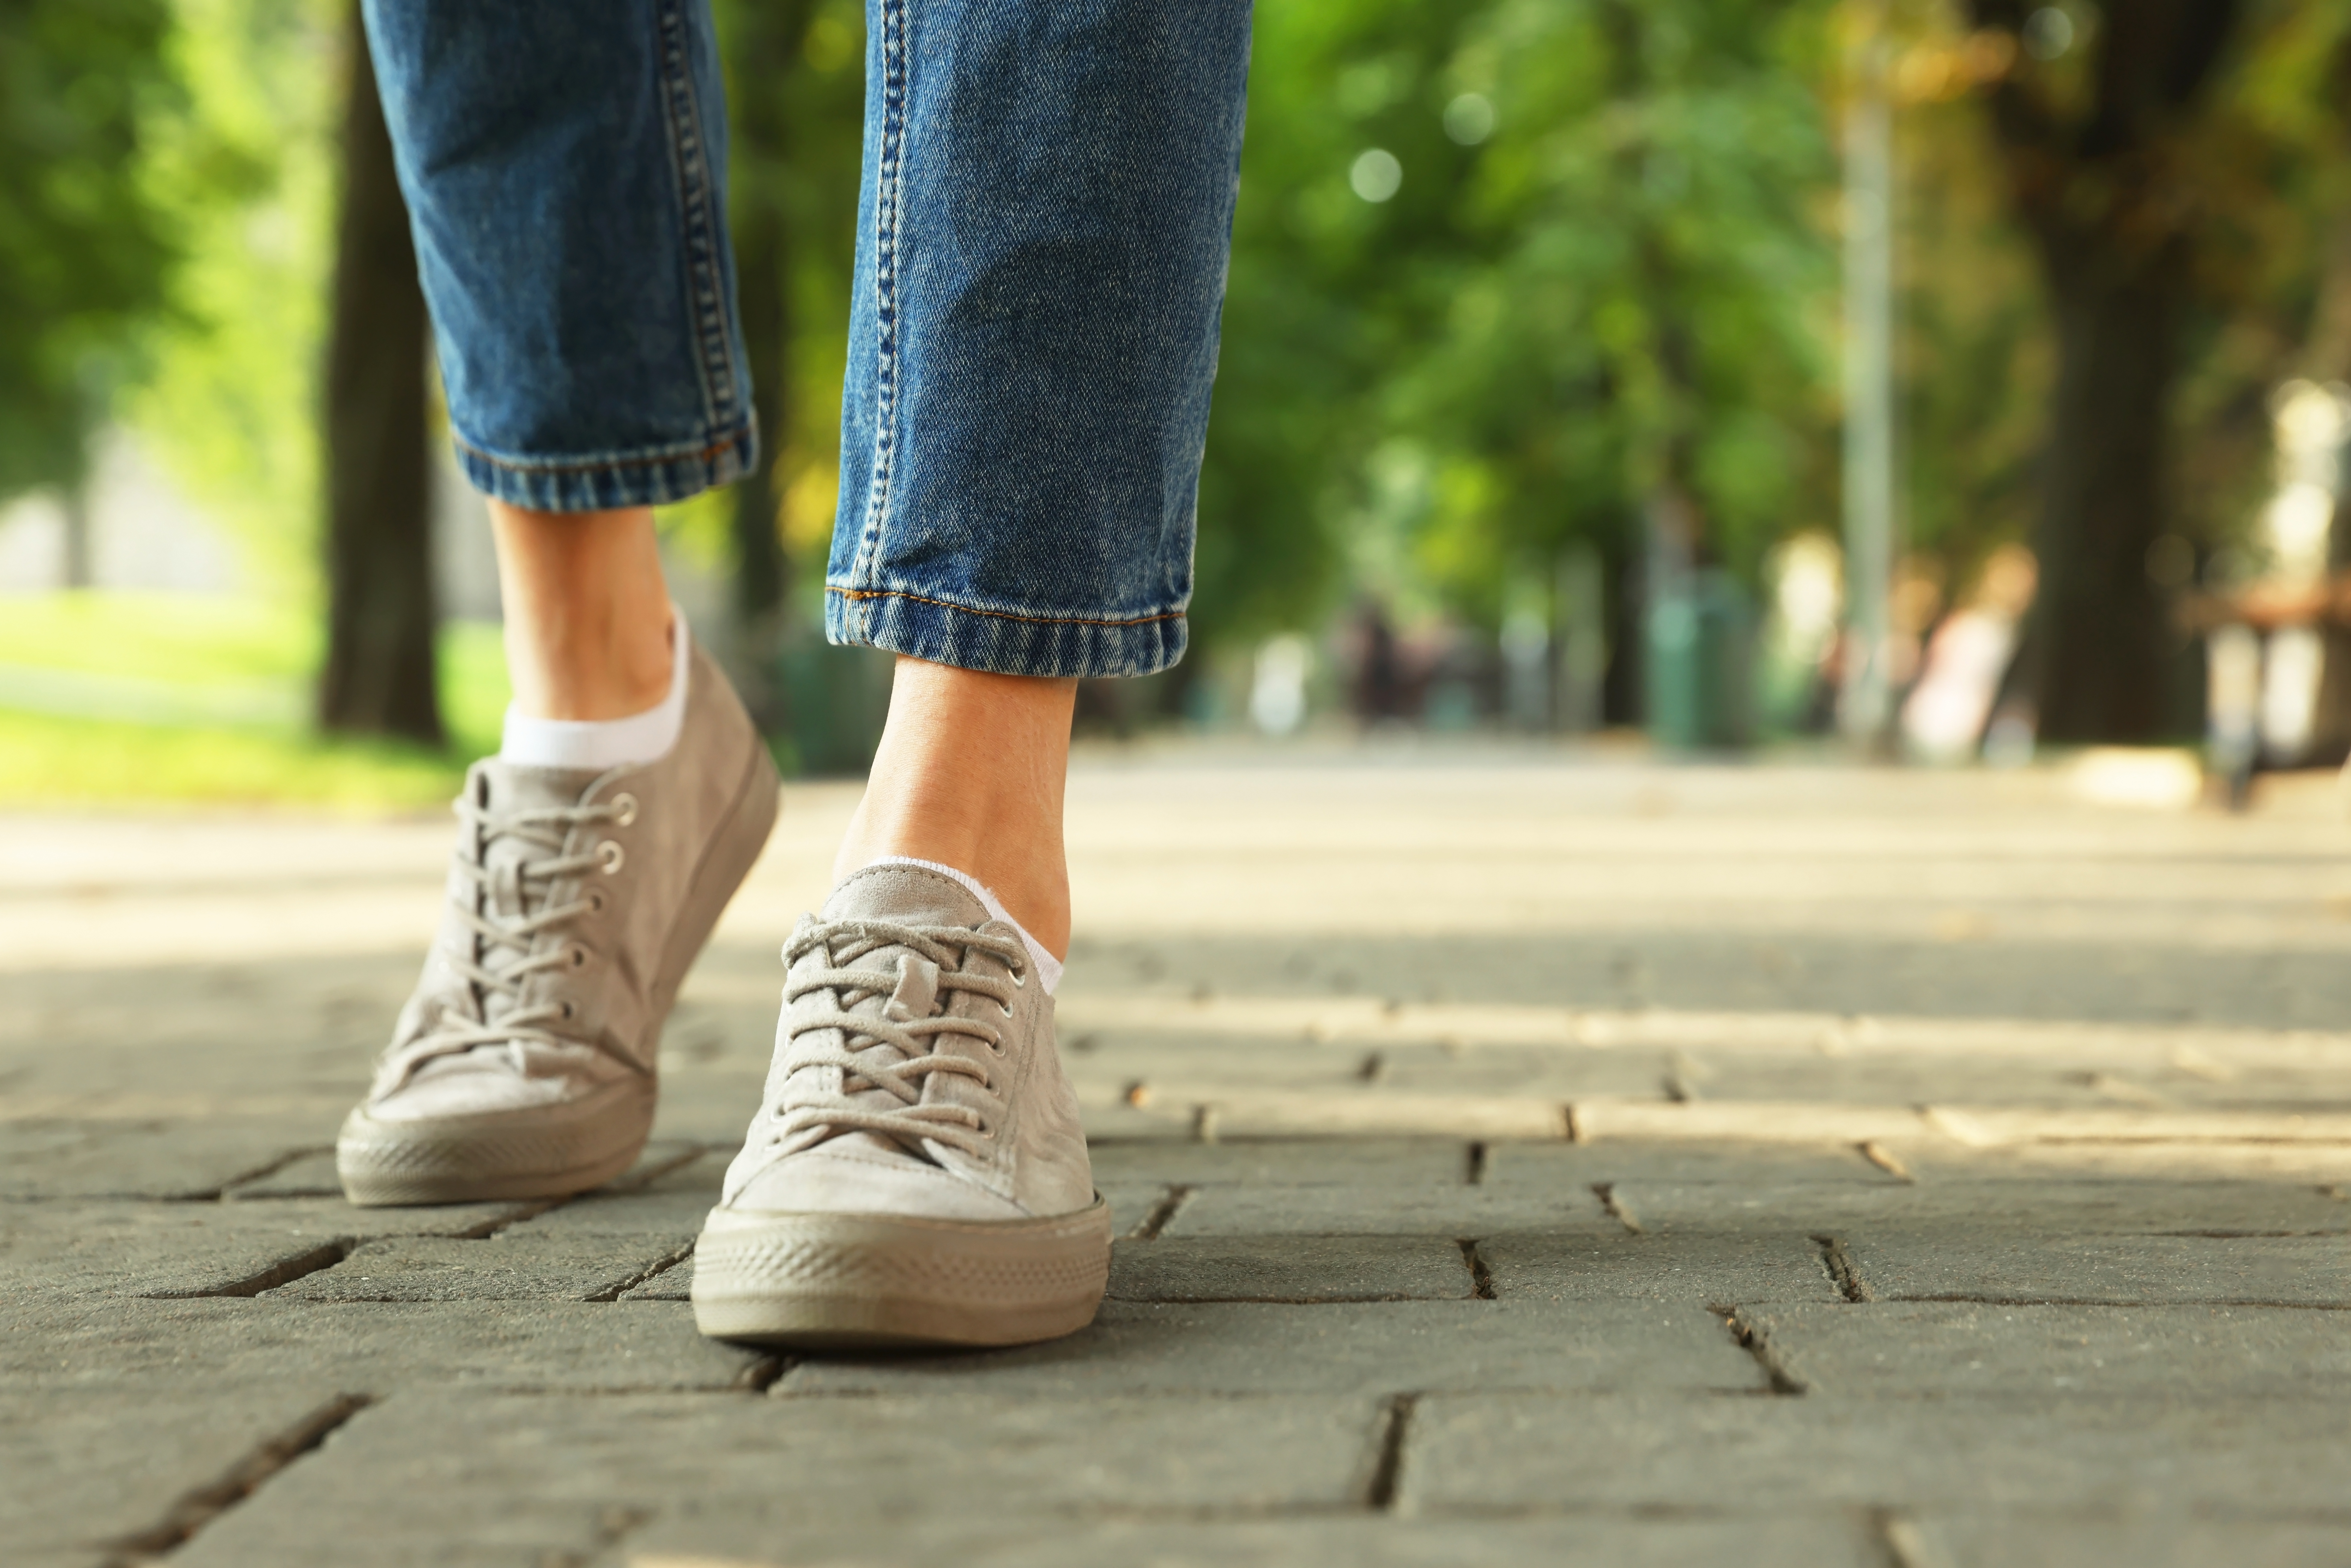 Woman walking on city street | Source: Shutterstock